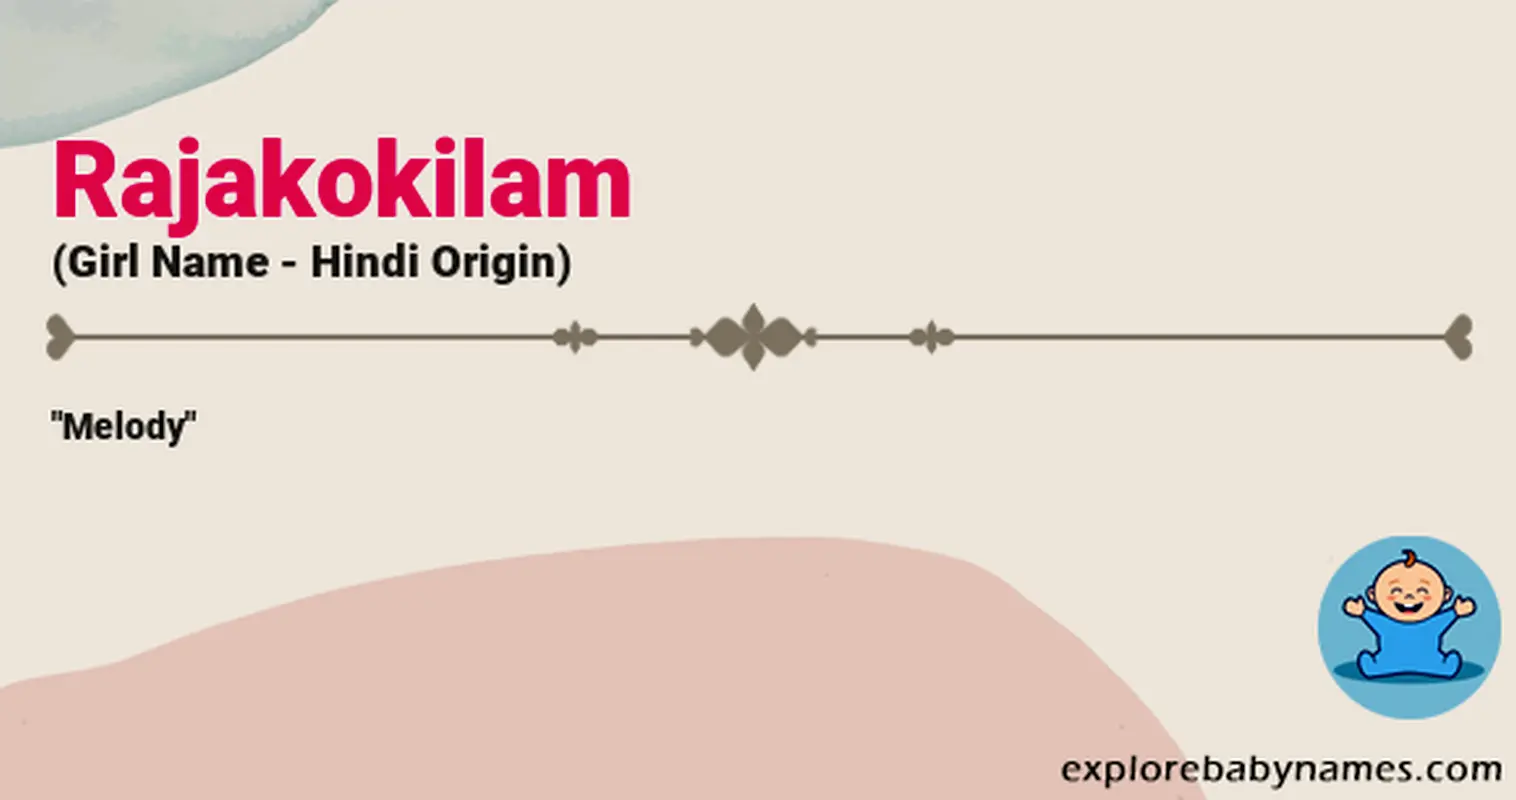 Meaning of Rajakokilam